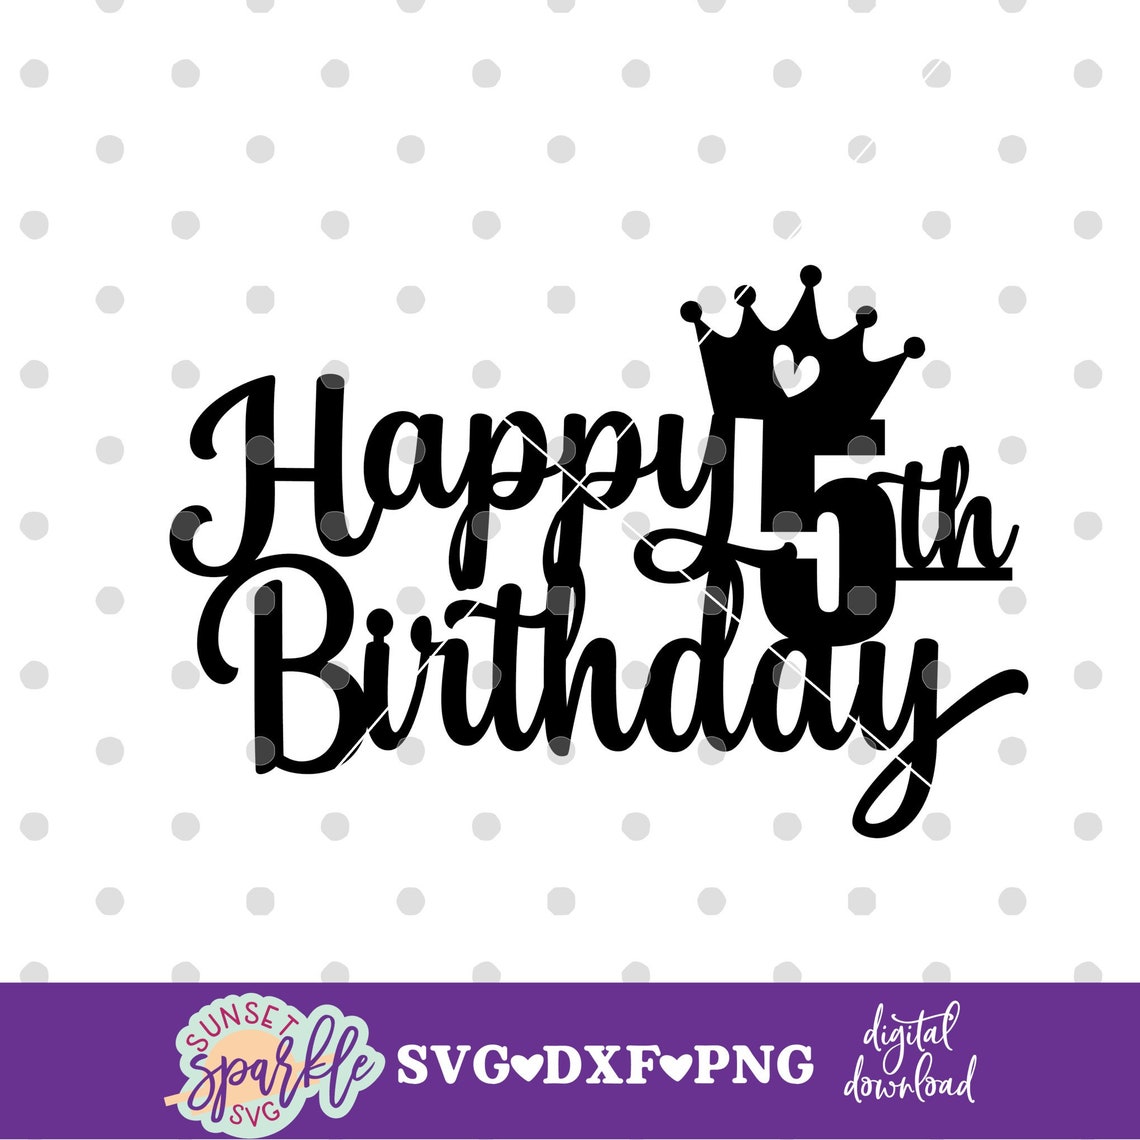 Cake Topper Svg Happy 5th Birthday Svg 5th Birthday Svg - Etsy